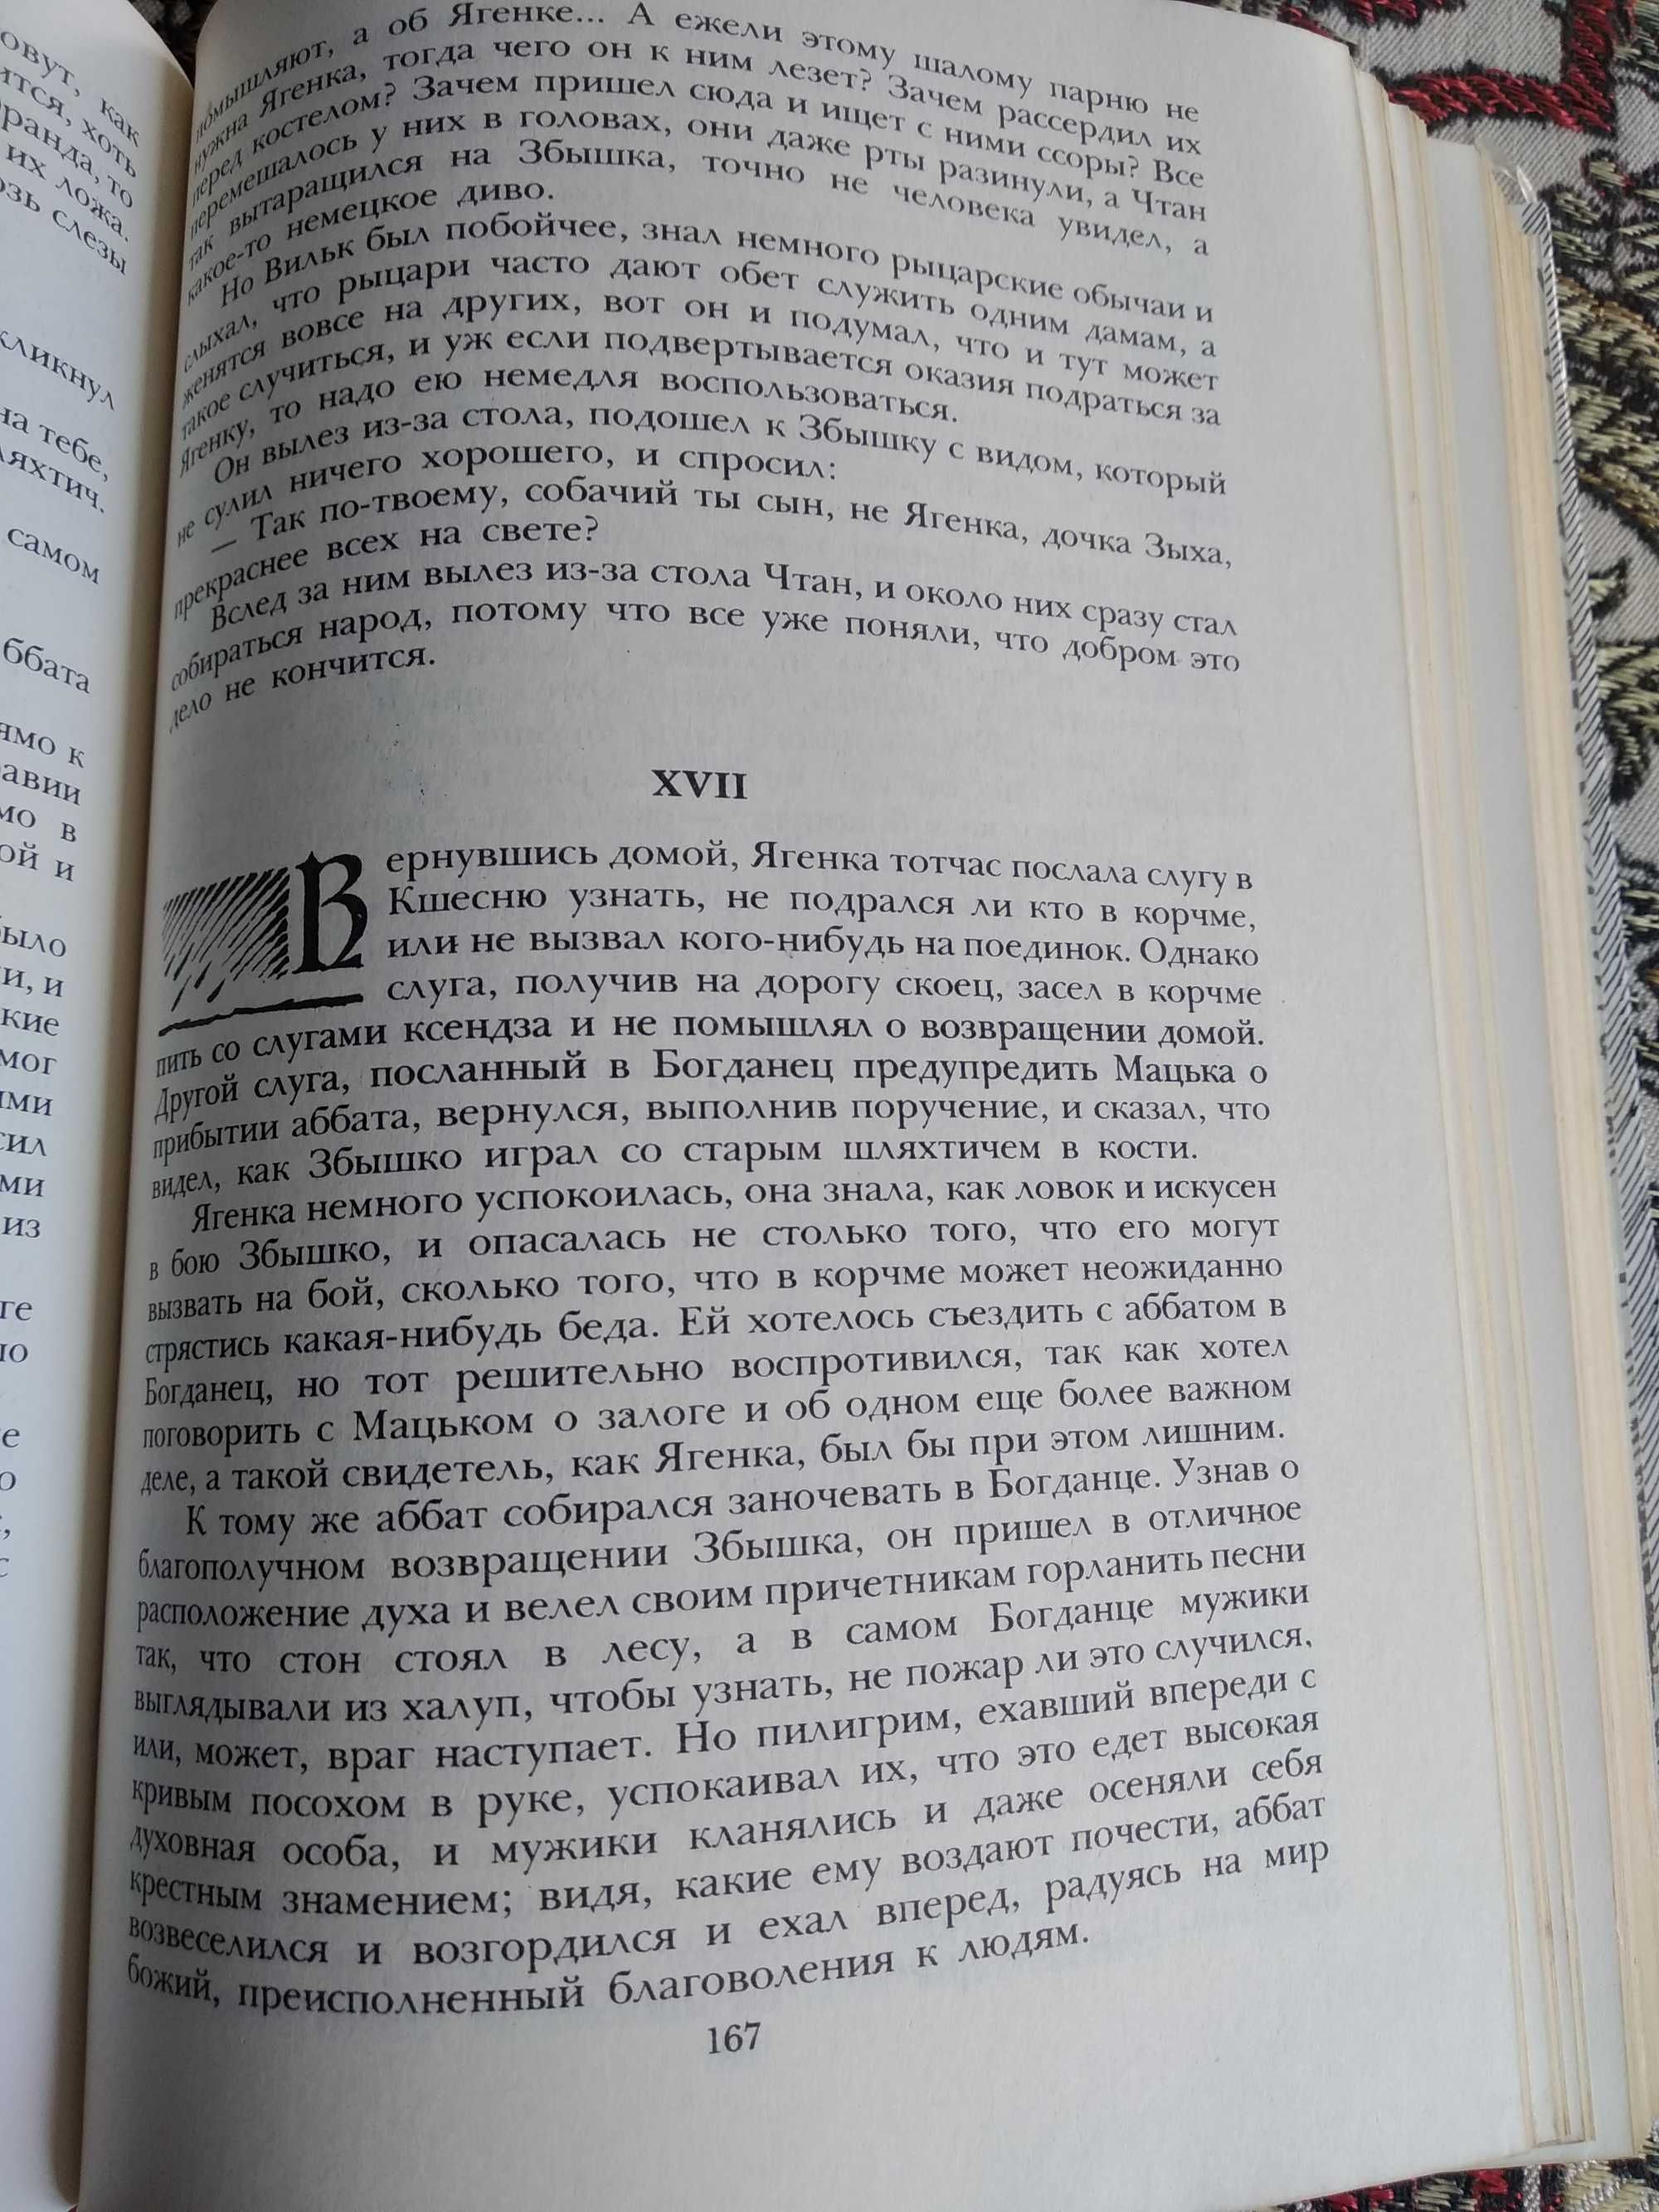 1985г._Польский роман Генрика Сенкевича "КРЕСТОНОСЦЫ".